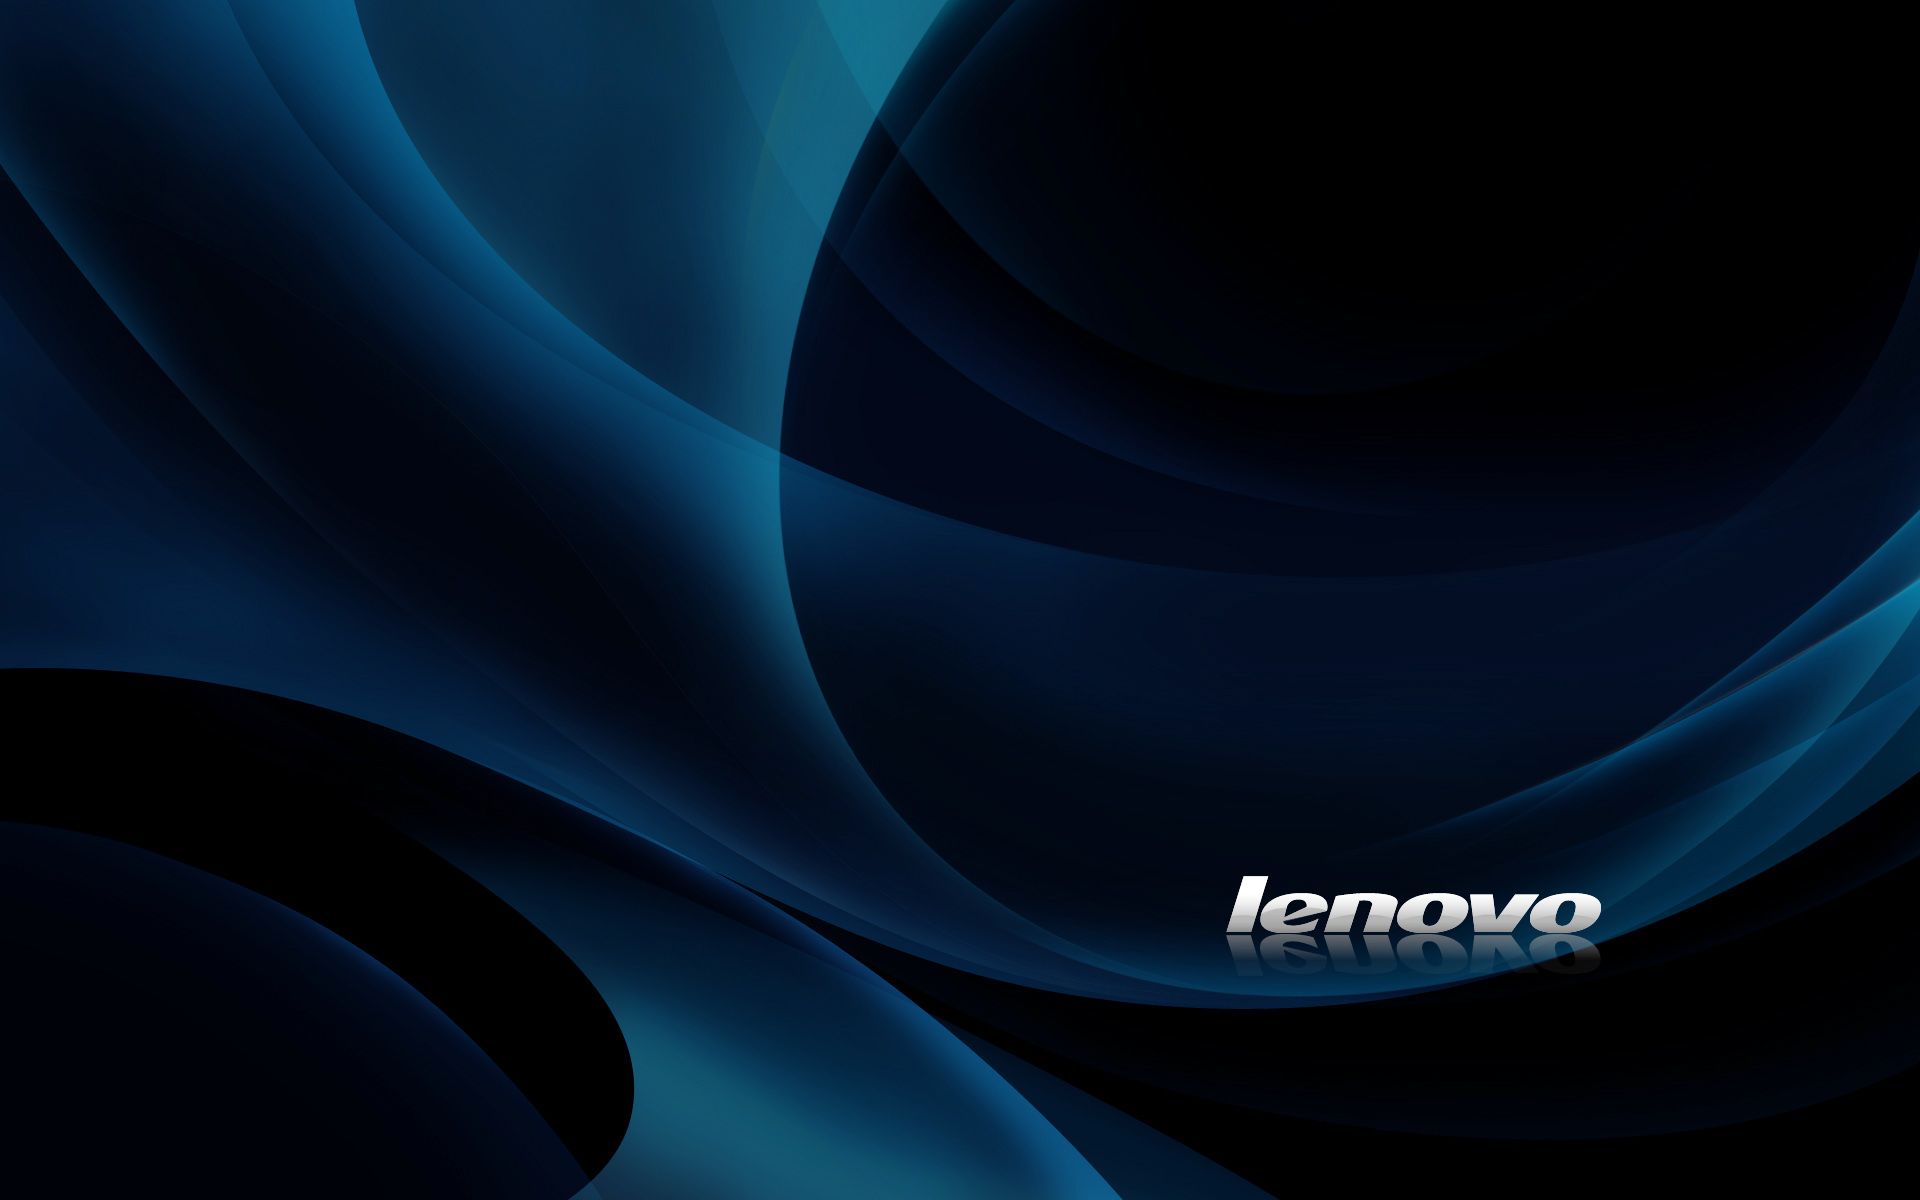 Lenovo Yoga Wallpapers: Yoga là dòng sản phẩm cao cấp của Lenovo. Nếu bạn đang sở hữu một chiếc Yoga thì không thể bỏ qua bộ sưu tập hình nền cho Yoga của Lenovo. Các hình nền này được thiết kế đặc biệt để phù hợp với màn hình cảm ứng và góc nhìn của Yoga, giúp bạn tận hưởng trải nghiệm tốt nhất.